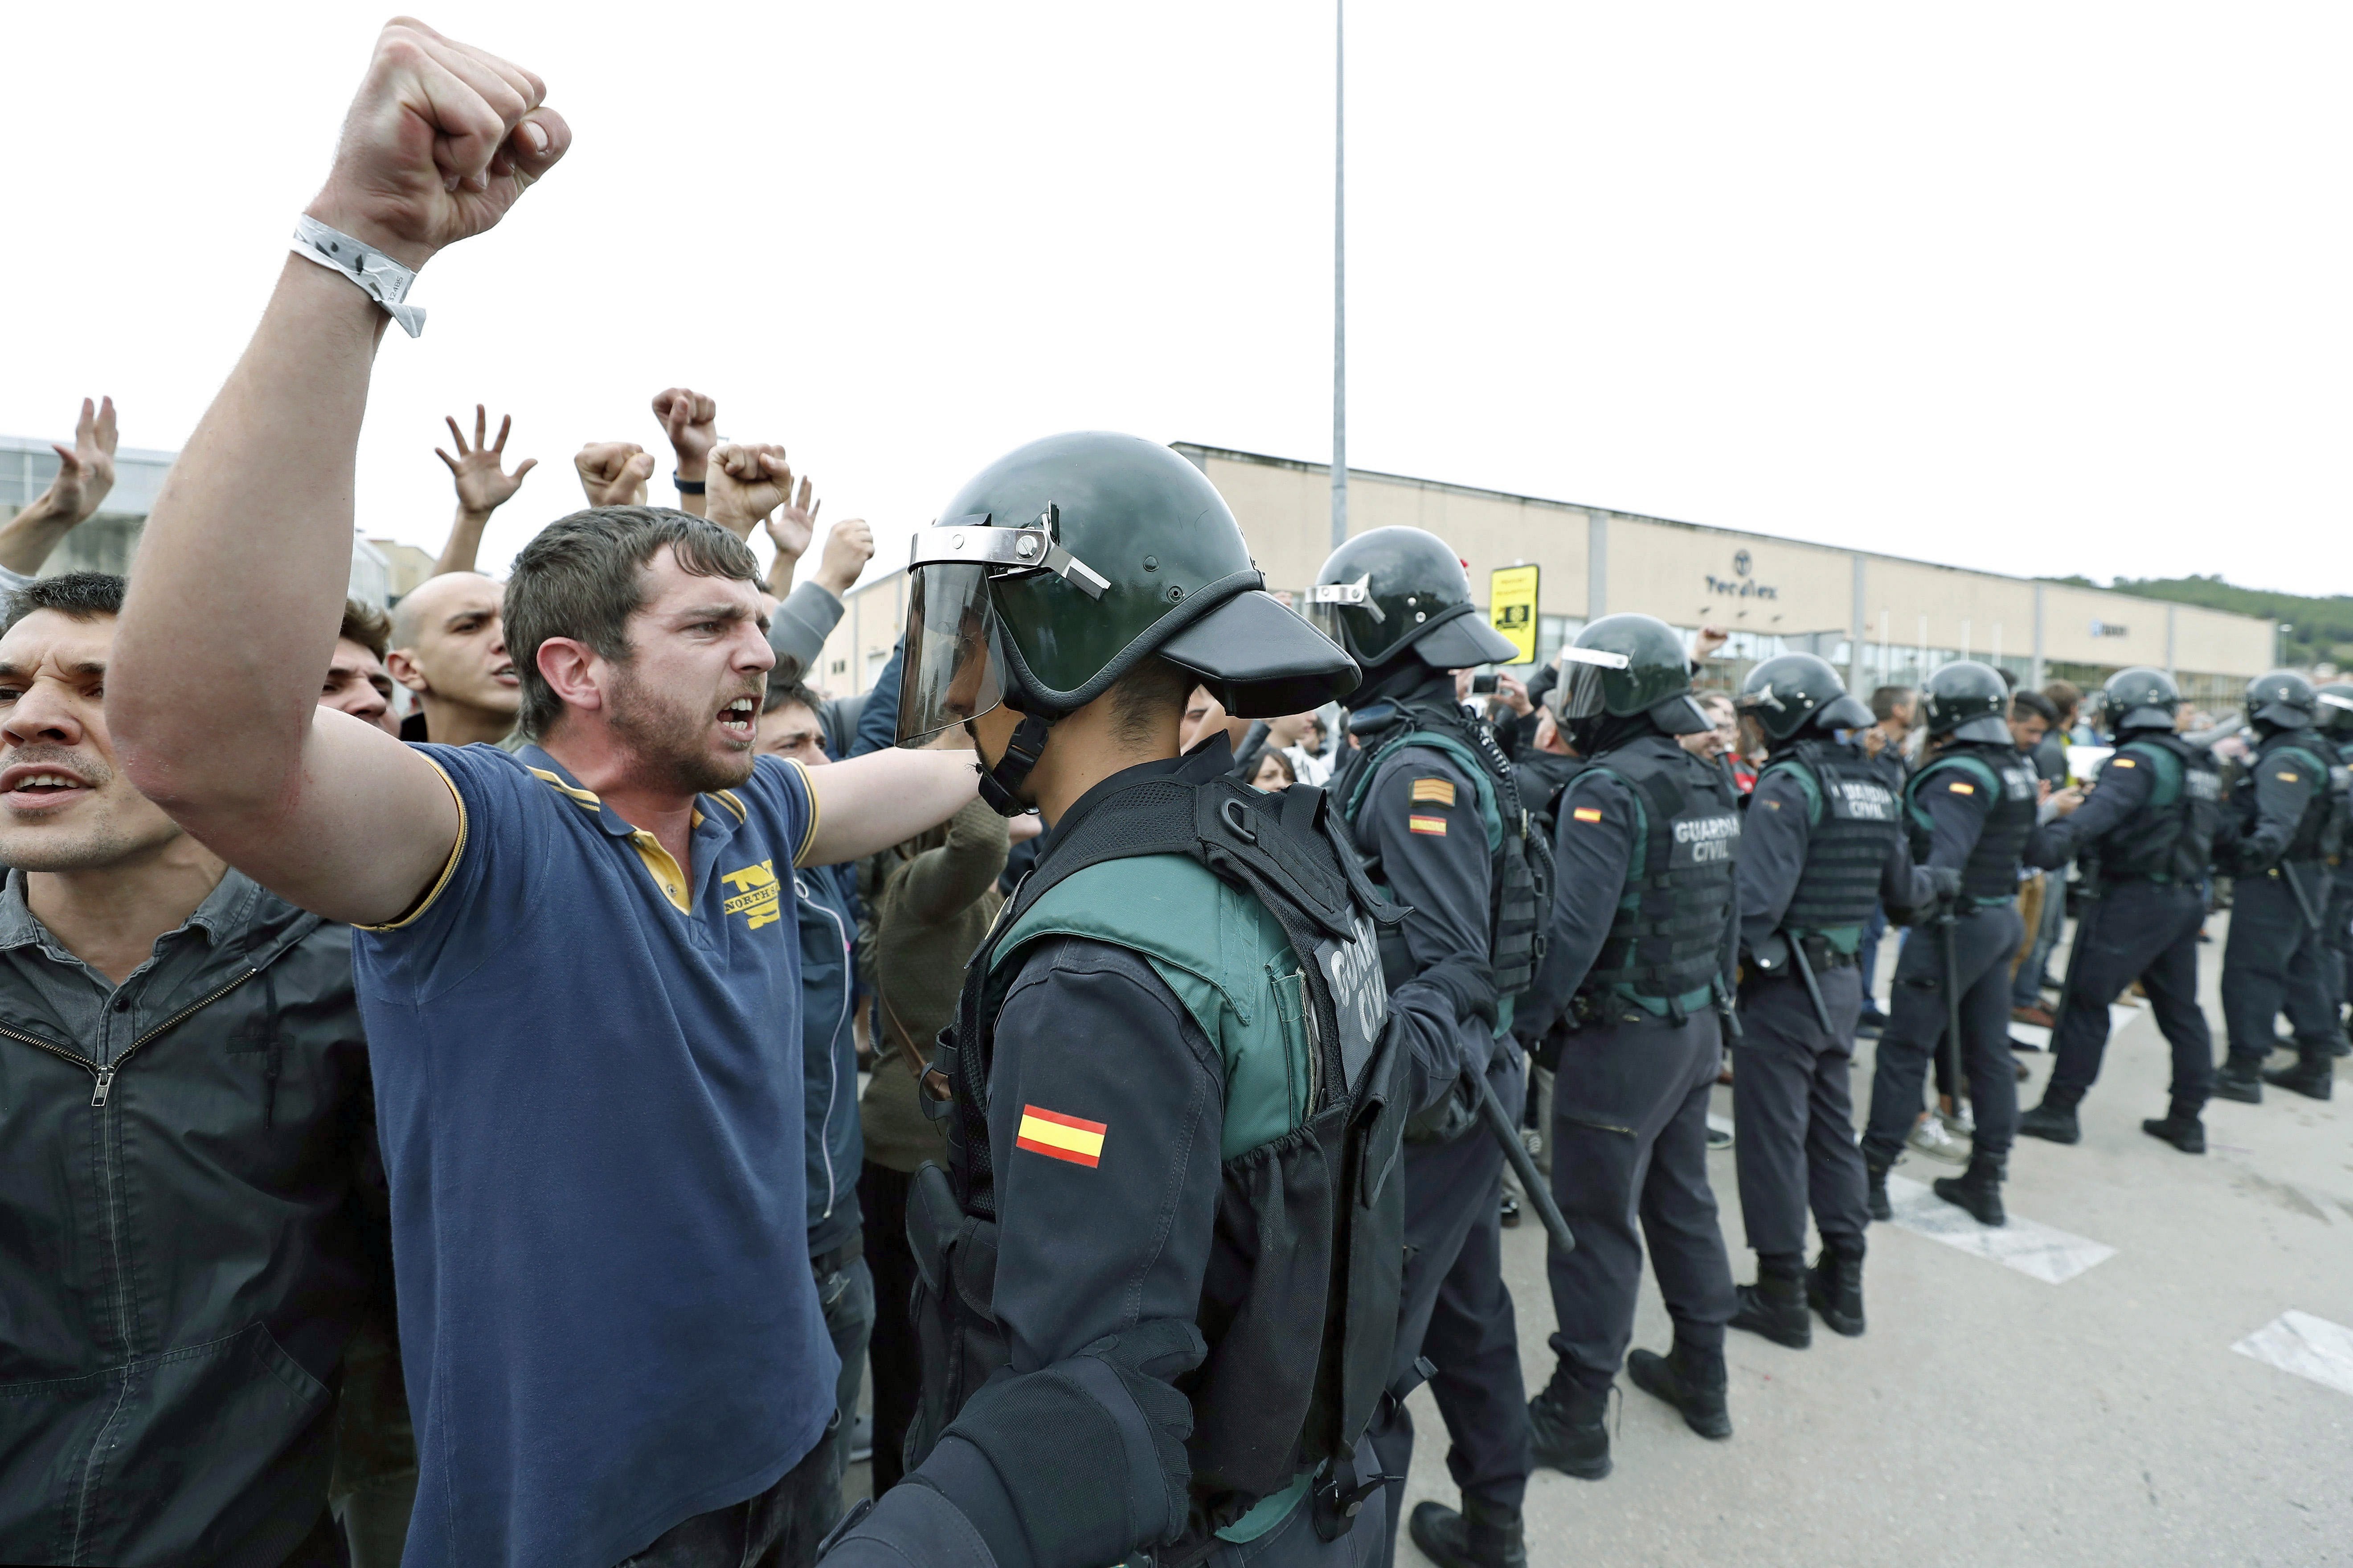 Ισπανική κυβέρνηση: «Υποδειγματική» η στάση της αστυνομίας στο δημοψήφισμα [Βίντεο]